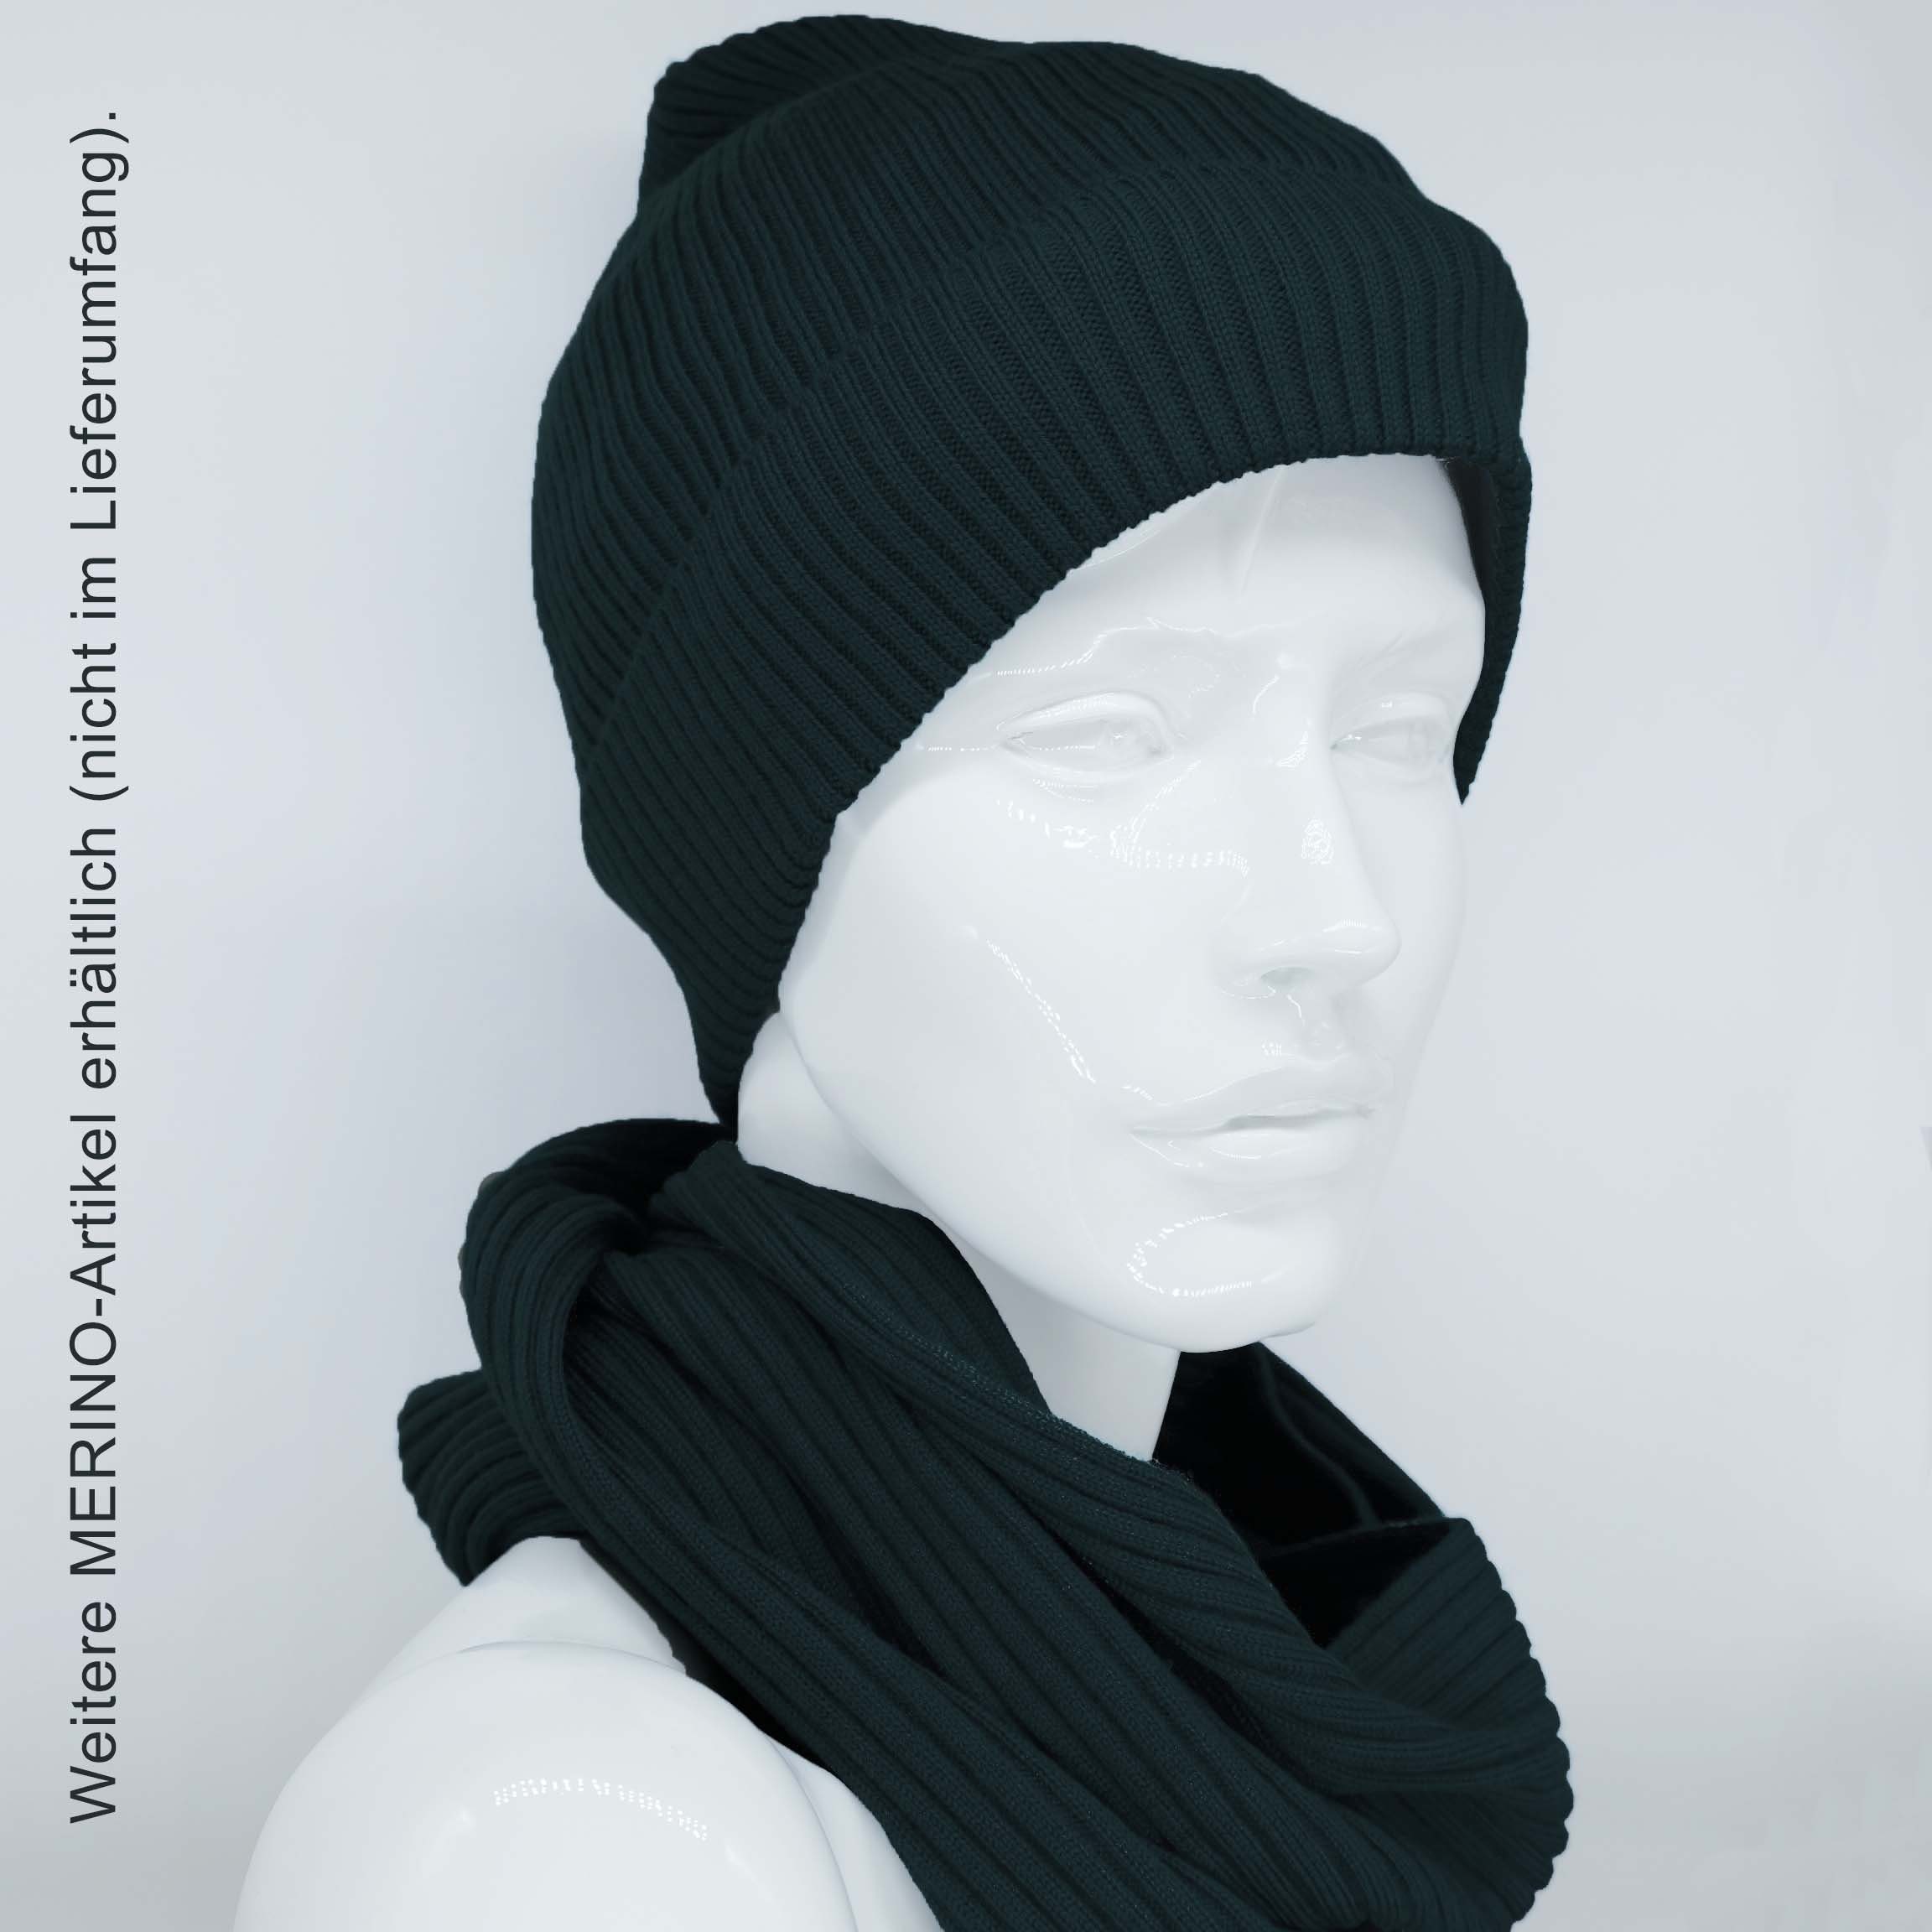 BEAZZ Stirnband Stirnband Ohrenwärmer Damen Merino 100% Winter schwarz warm und weich WOLLE Feinstrick